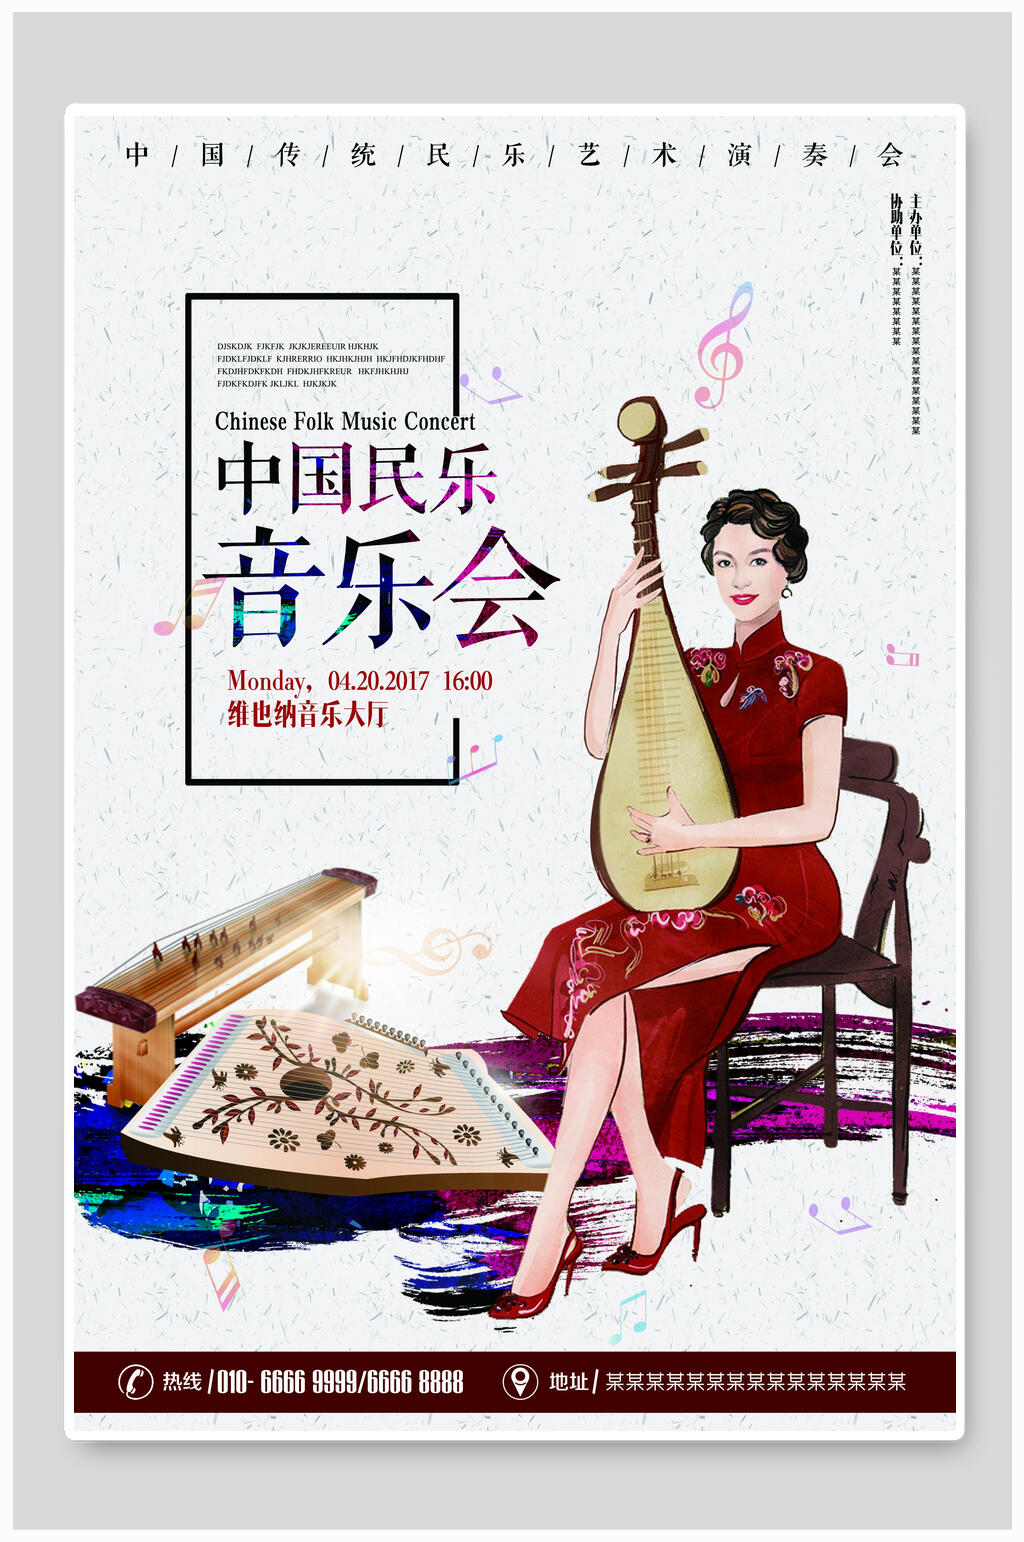 众图网独家提供中国民乐音乐演唱会海报设计模板素材免费下载,本作品